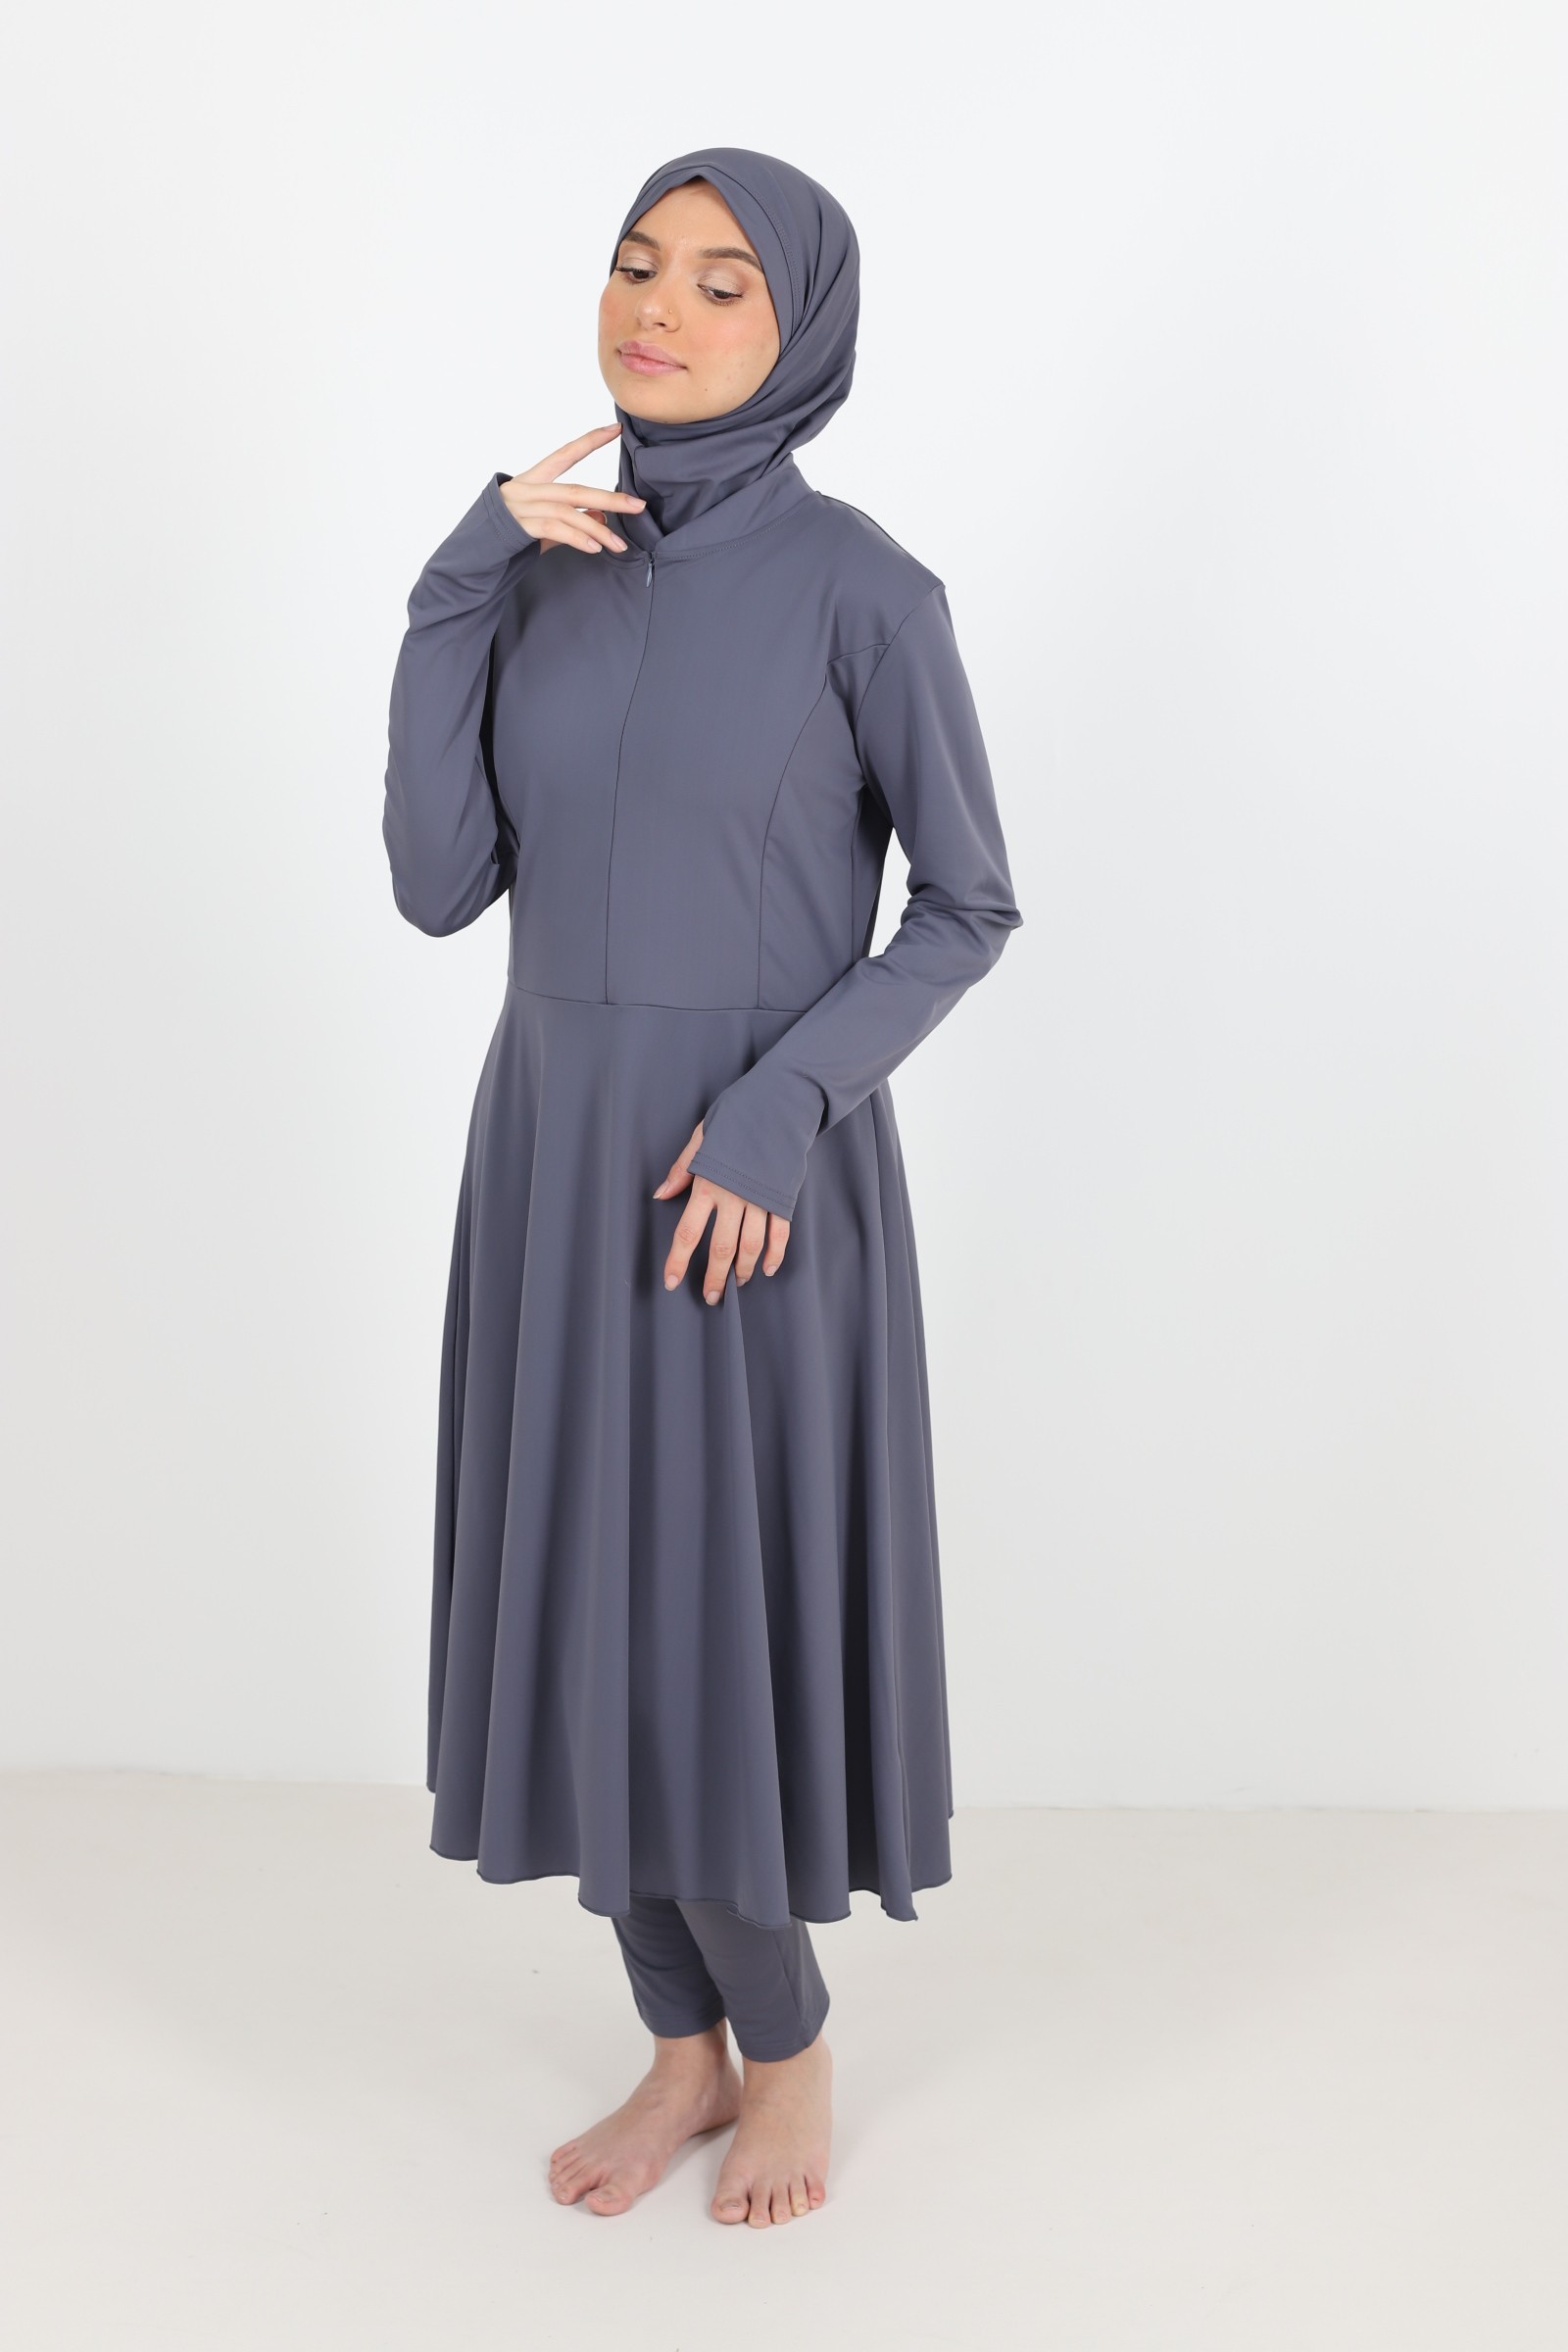 Burkini maxi long mastour pour femme maillot de bain islamique femme